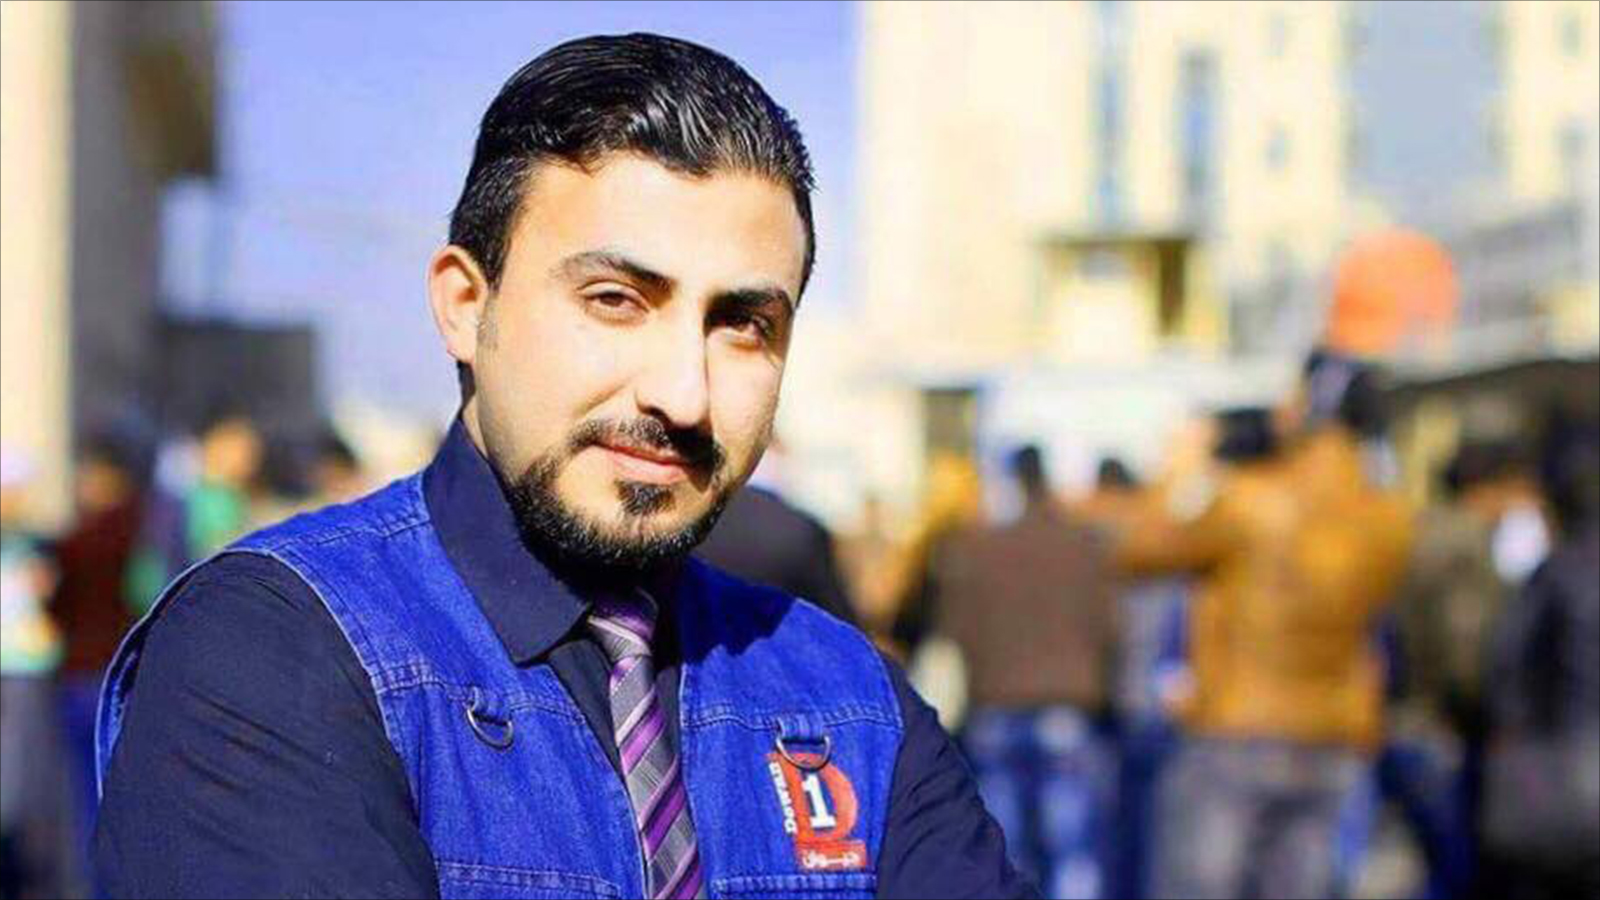 الصحفي سرمد القيس تعرض للتهديد بالقتل بسبب إنجازه لتقرير عن امرأة تقود سيارة أجرة ببغداد